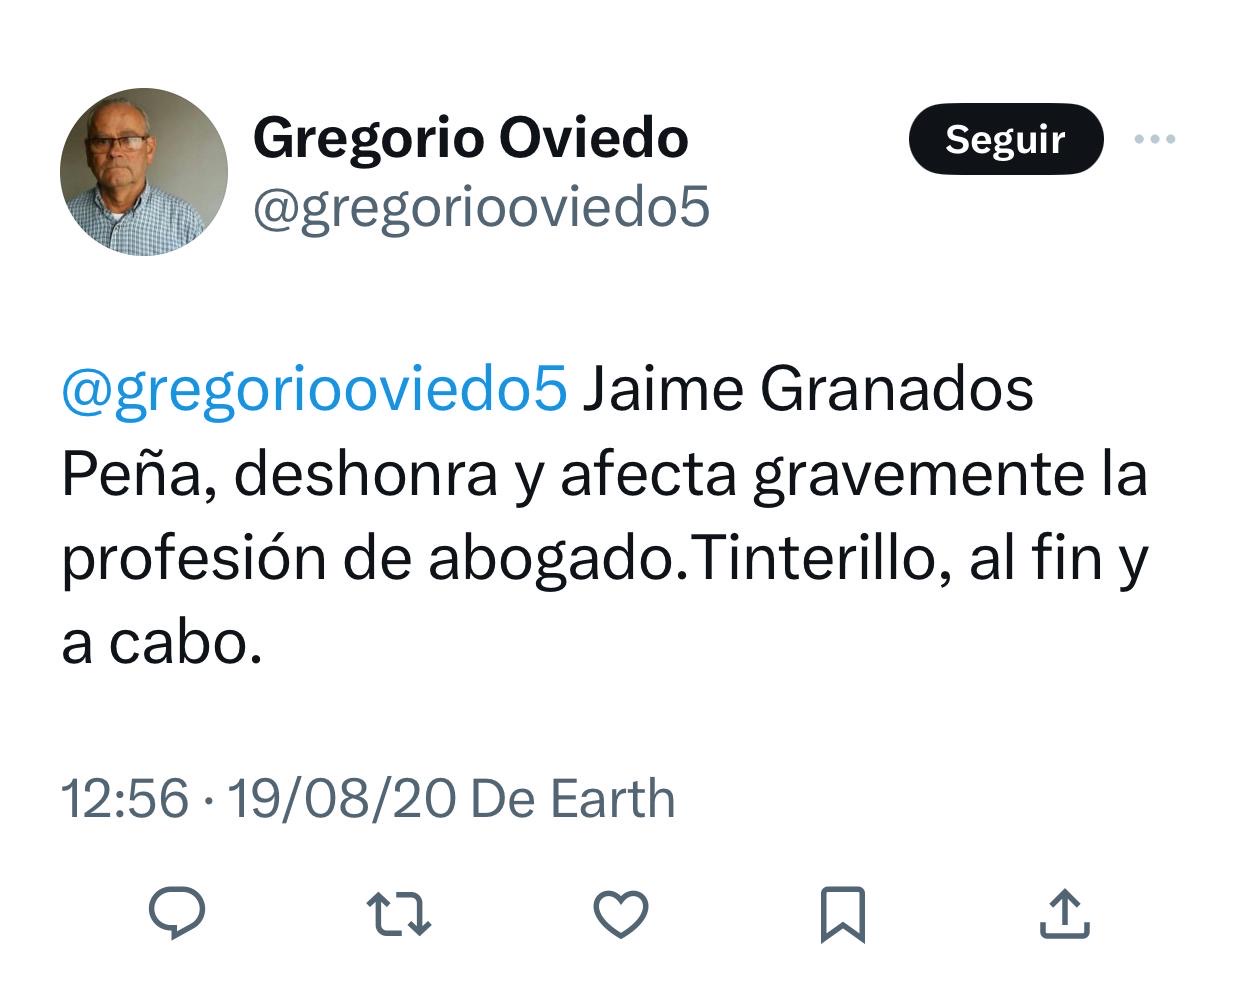 De Jaime Granados, abogado penalista